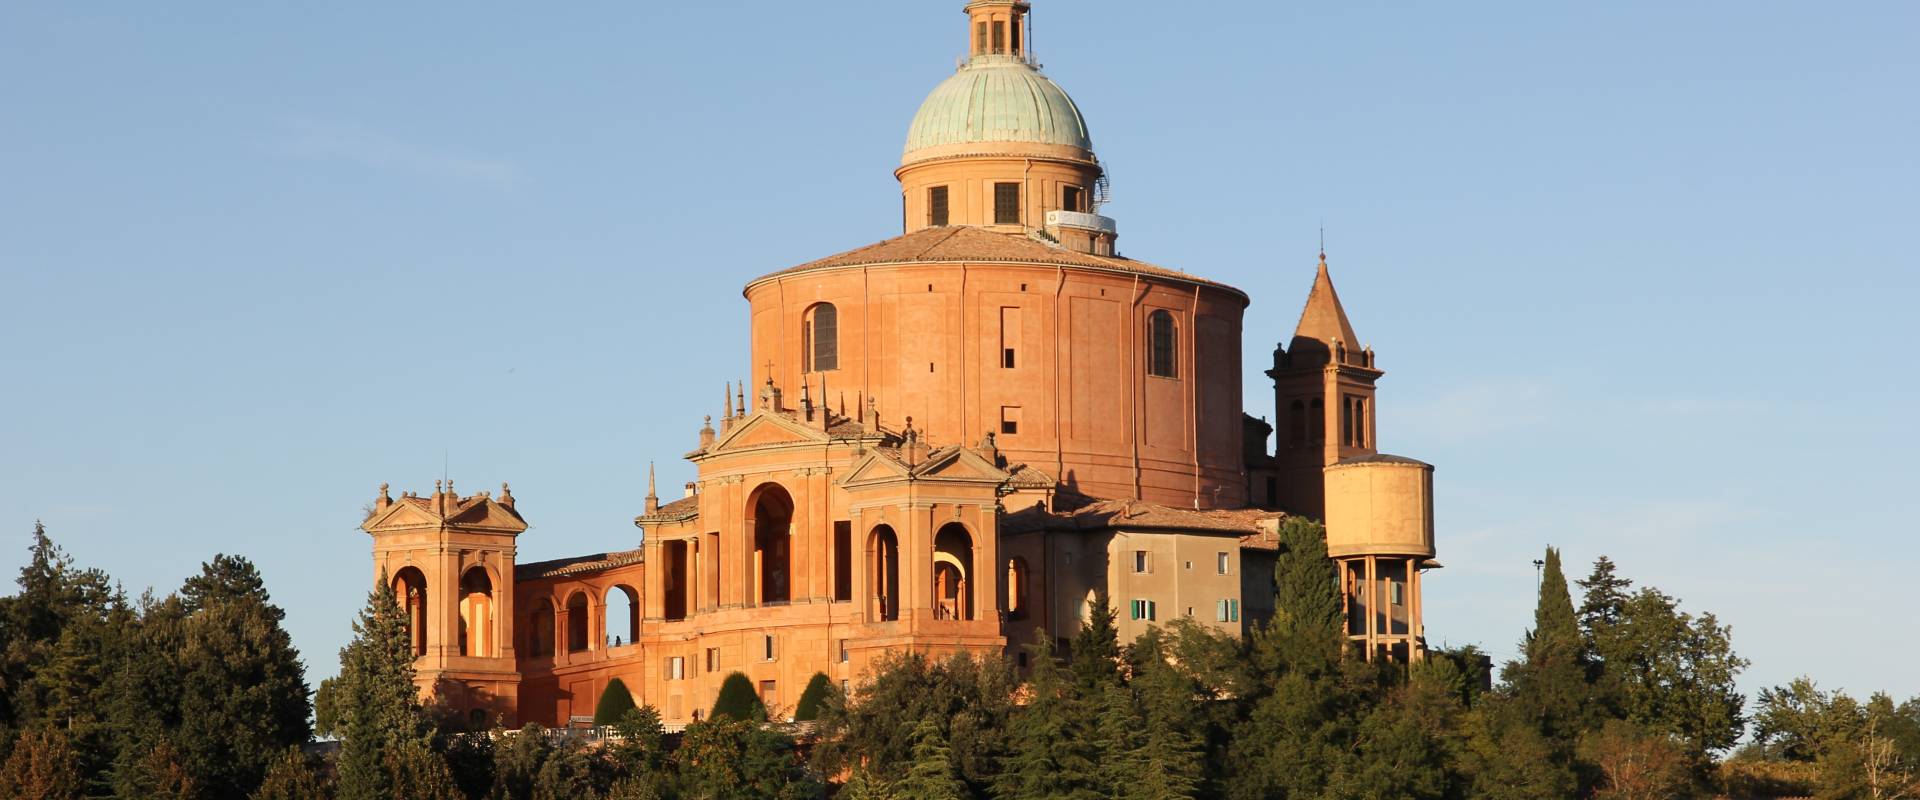 Bologna, santuario della Madonna di San Luca (04) foto di Gianni Careddu